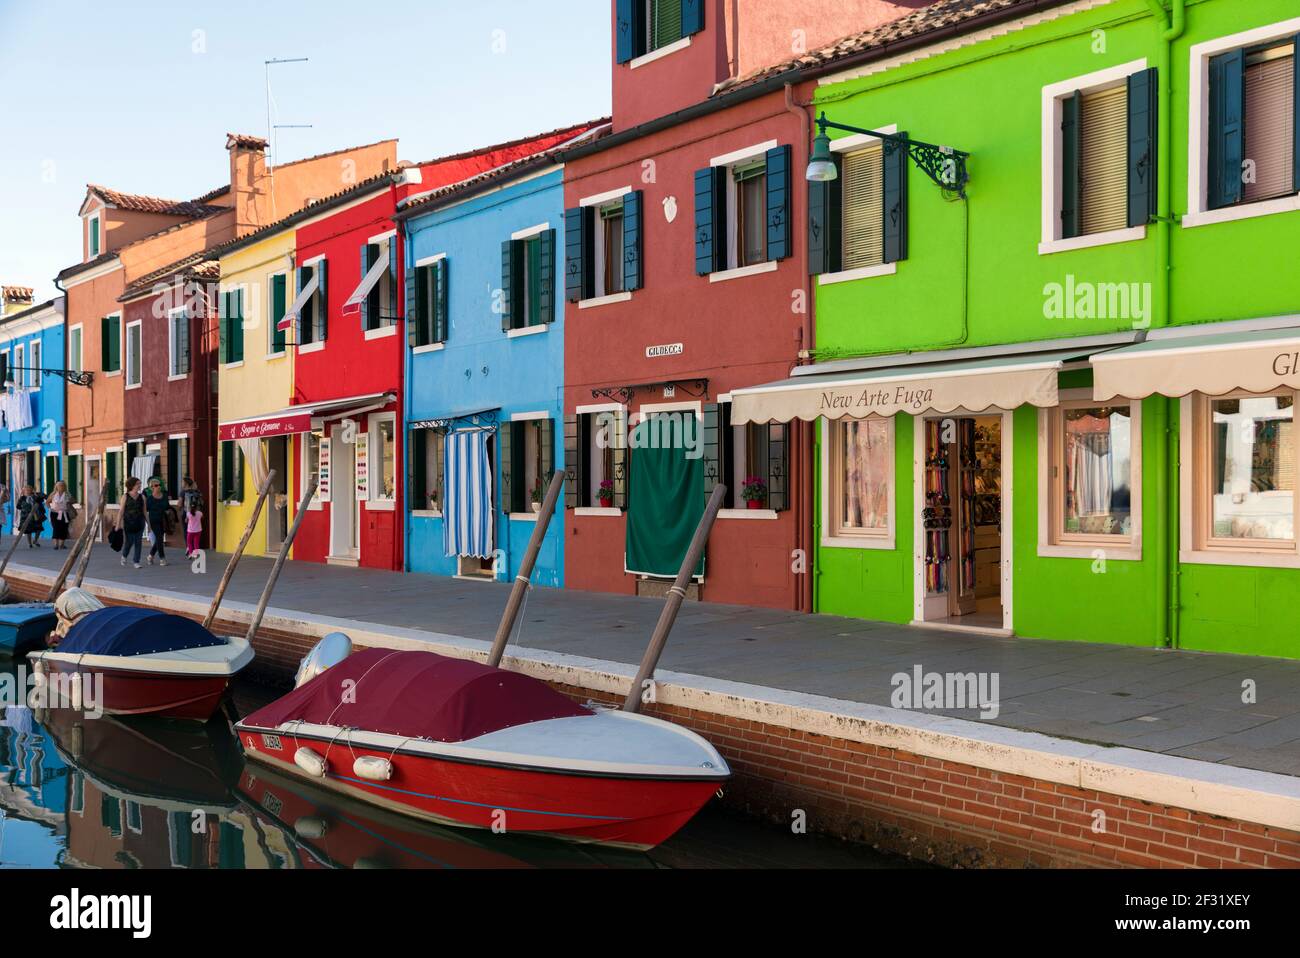 Italia, Venezia, Burano, colorati negozi dipinti che costeggiano un canale Foto Stock